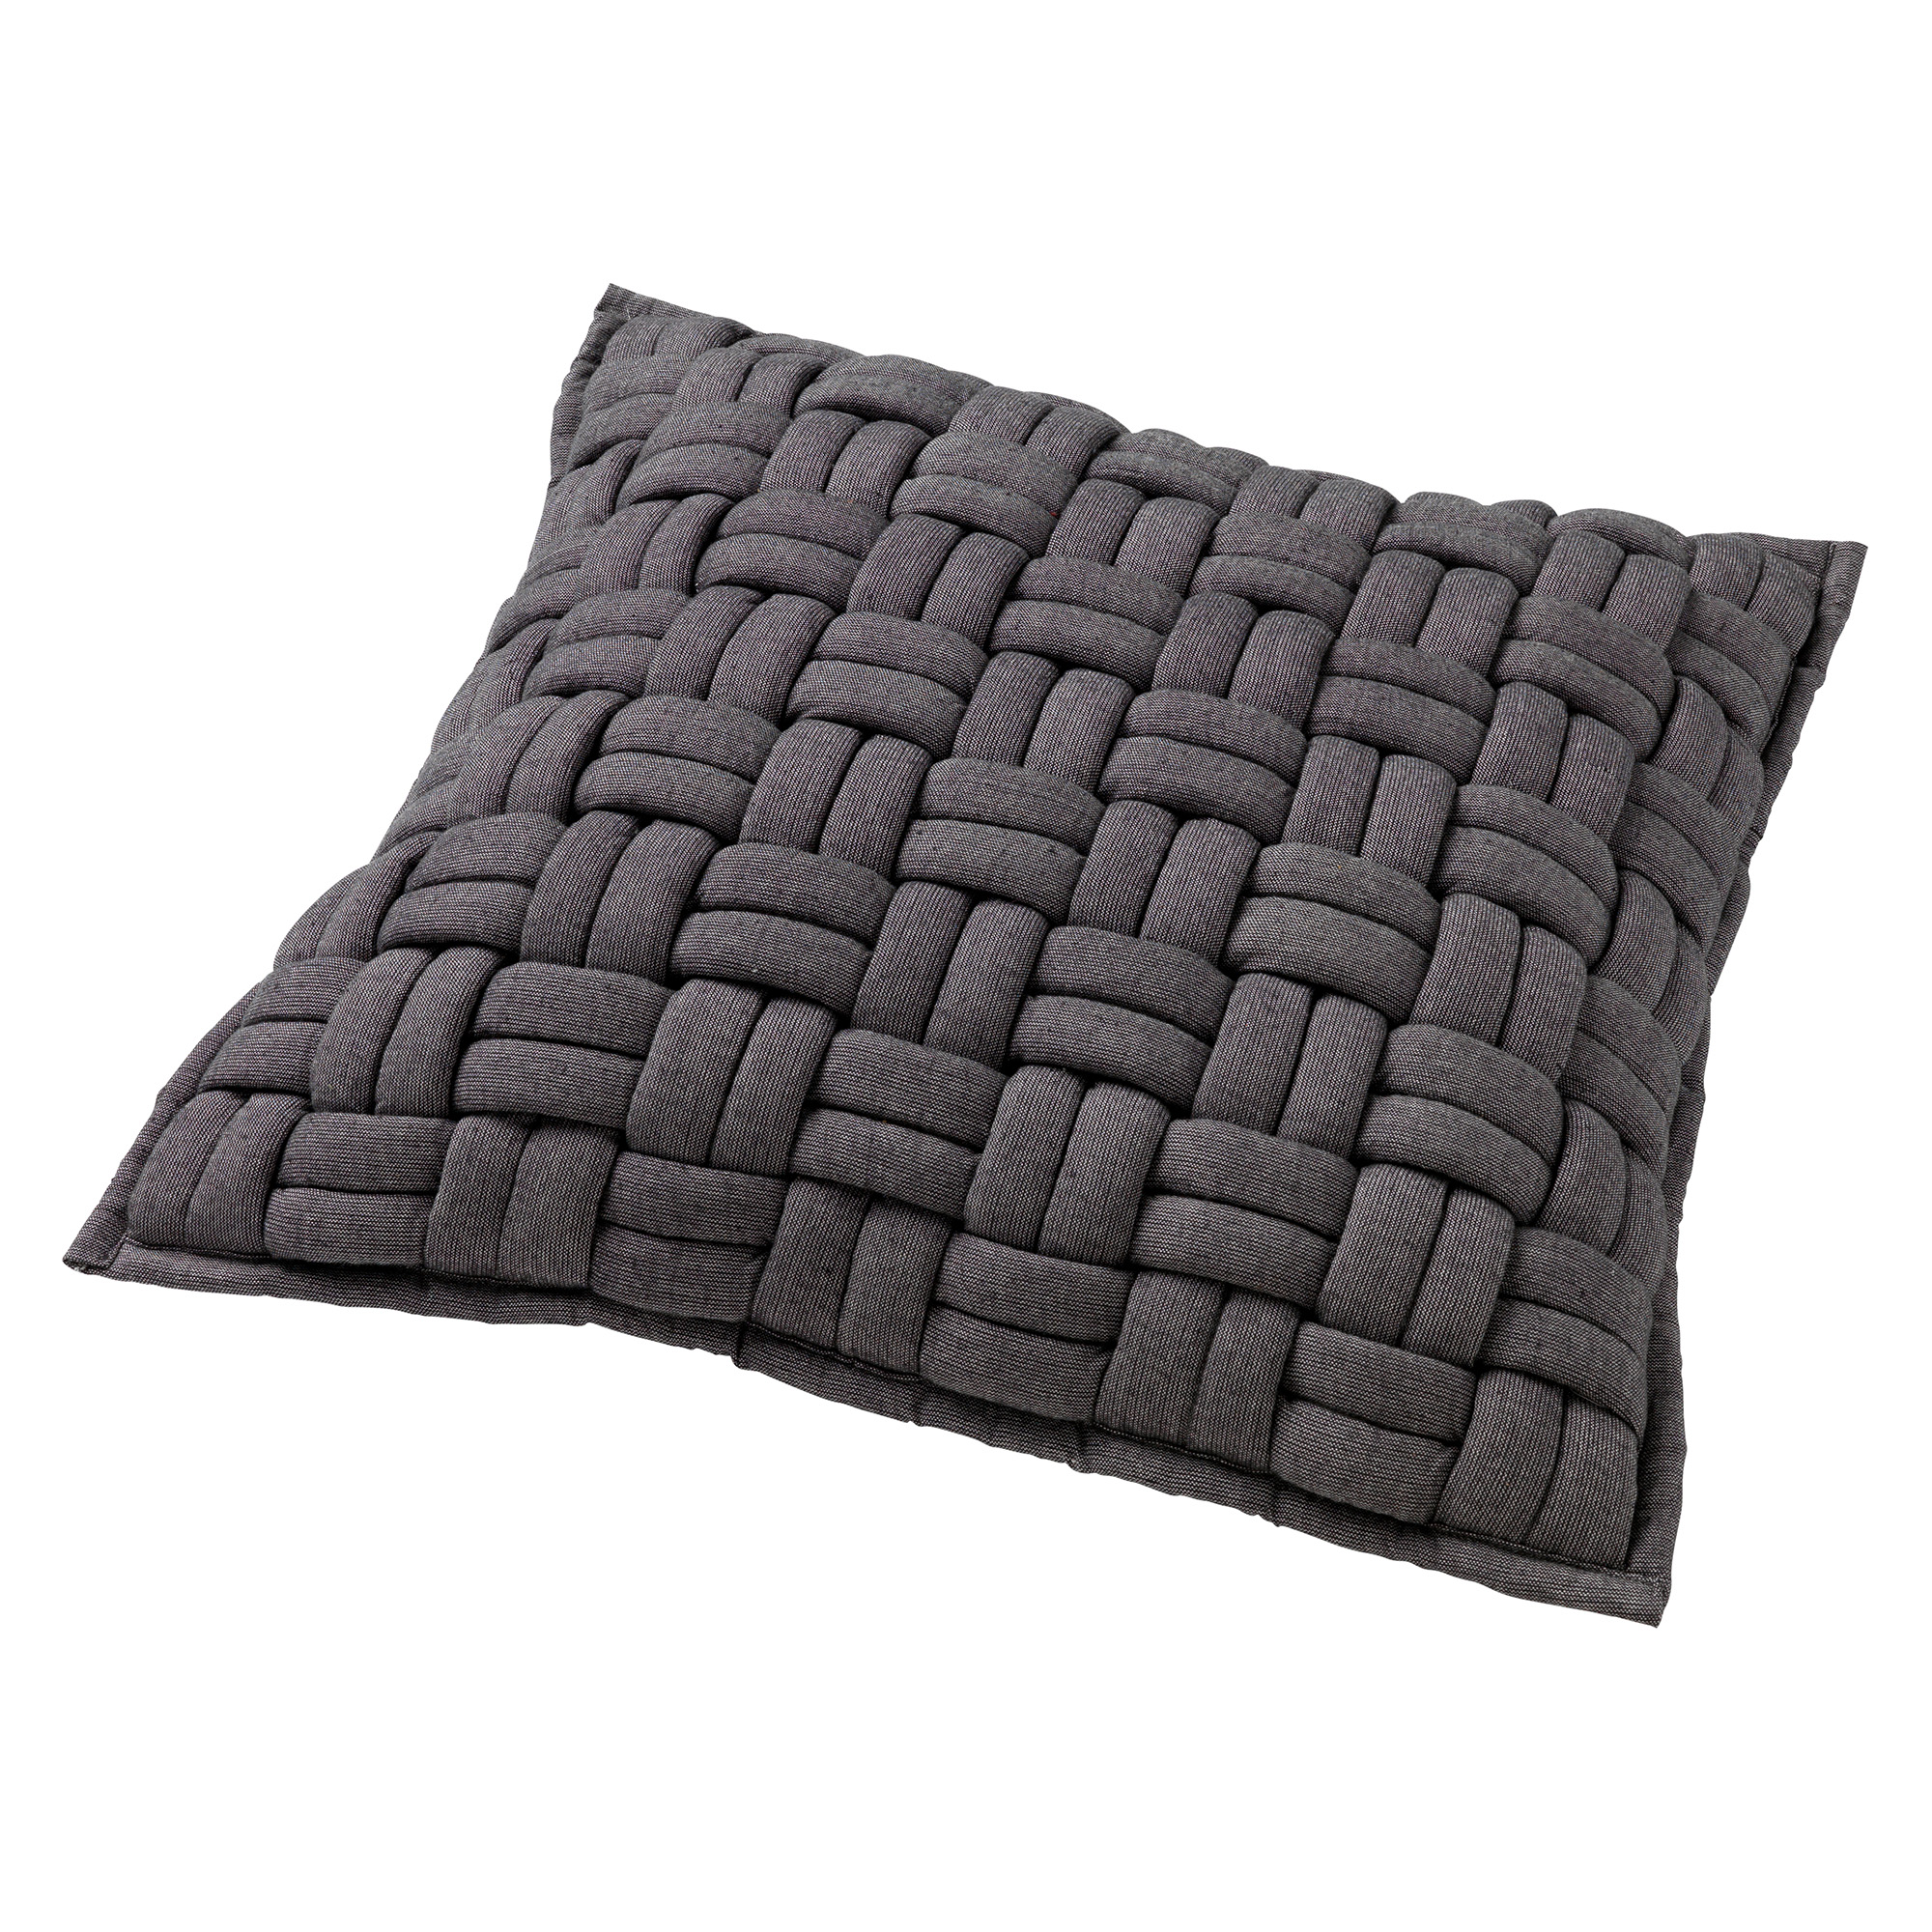 LEVI - Sierkussen 45x45 cm - luxe woonkussen met een hoes van 100% katoen - Charcoal Gray - antraciet